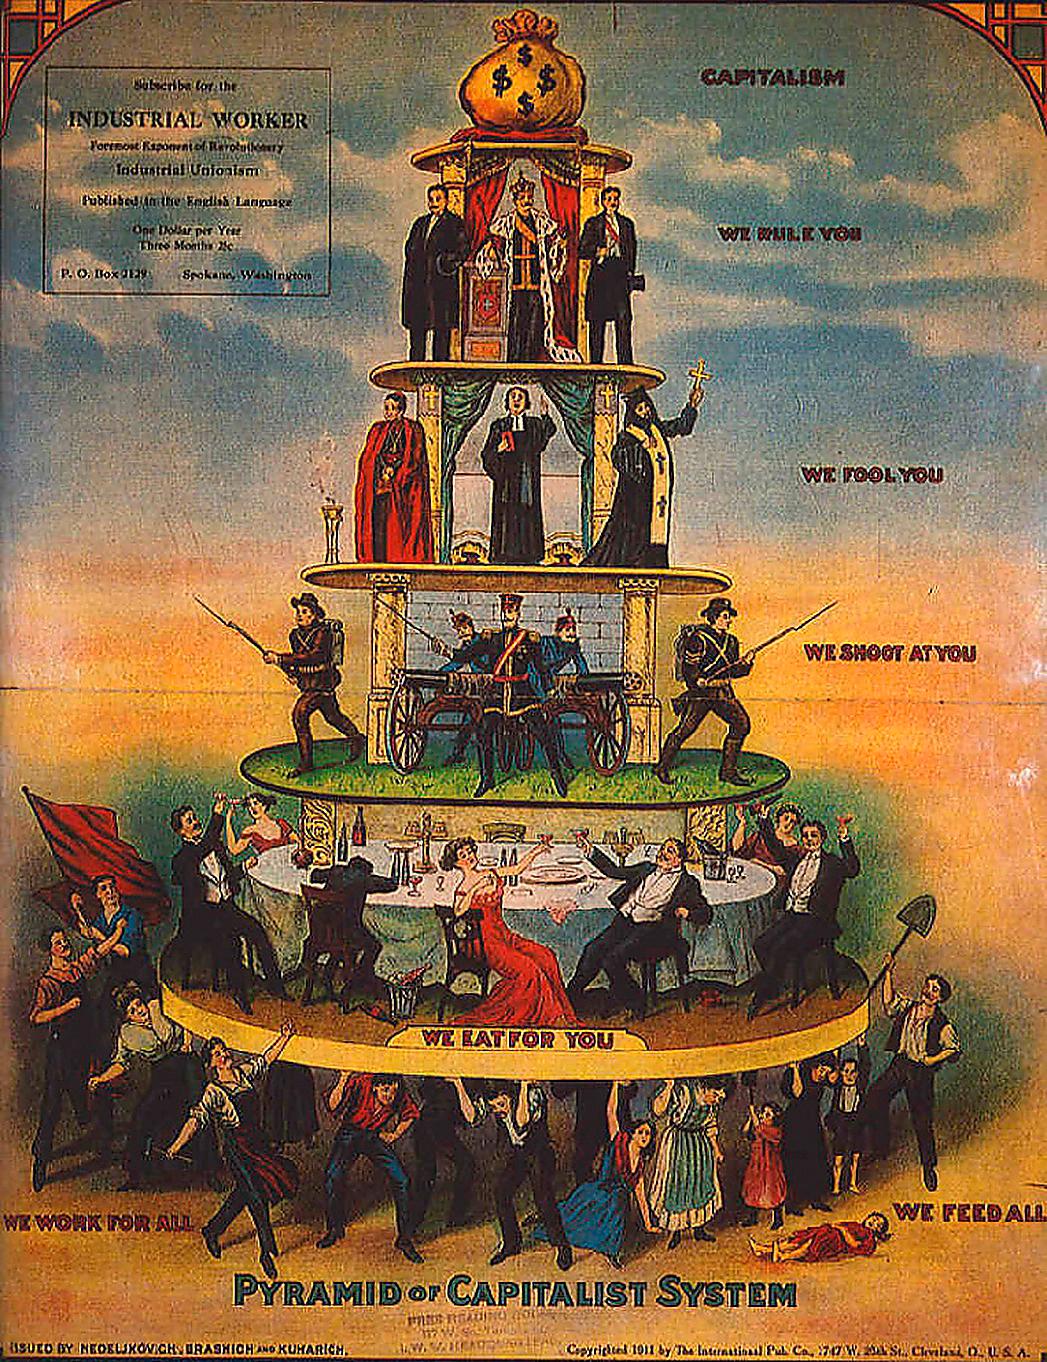 sådan är kapitalismen…  Den kapitalistiska pyramiden från 1911 illustrerar hur hierarkierna ser ut inom kapitalismen, enligt tidningen The Industrial Worker.